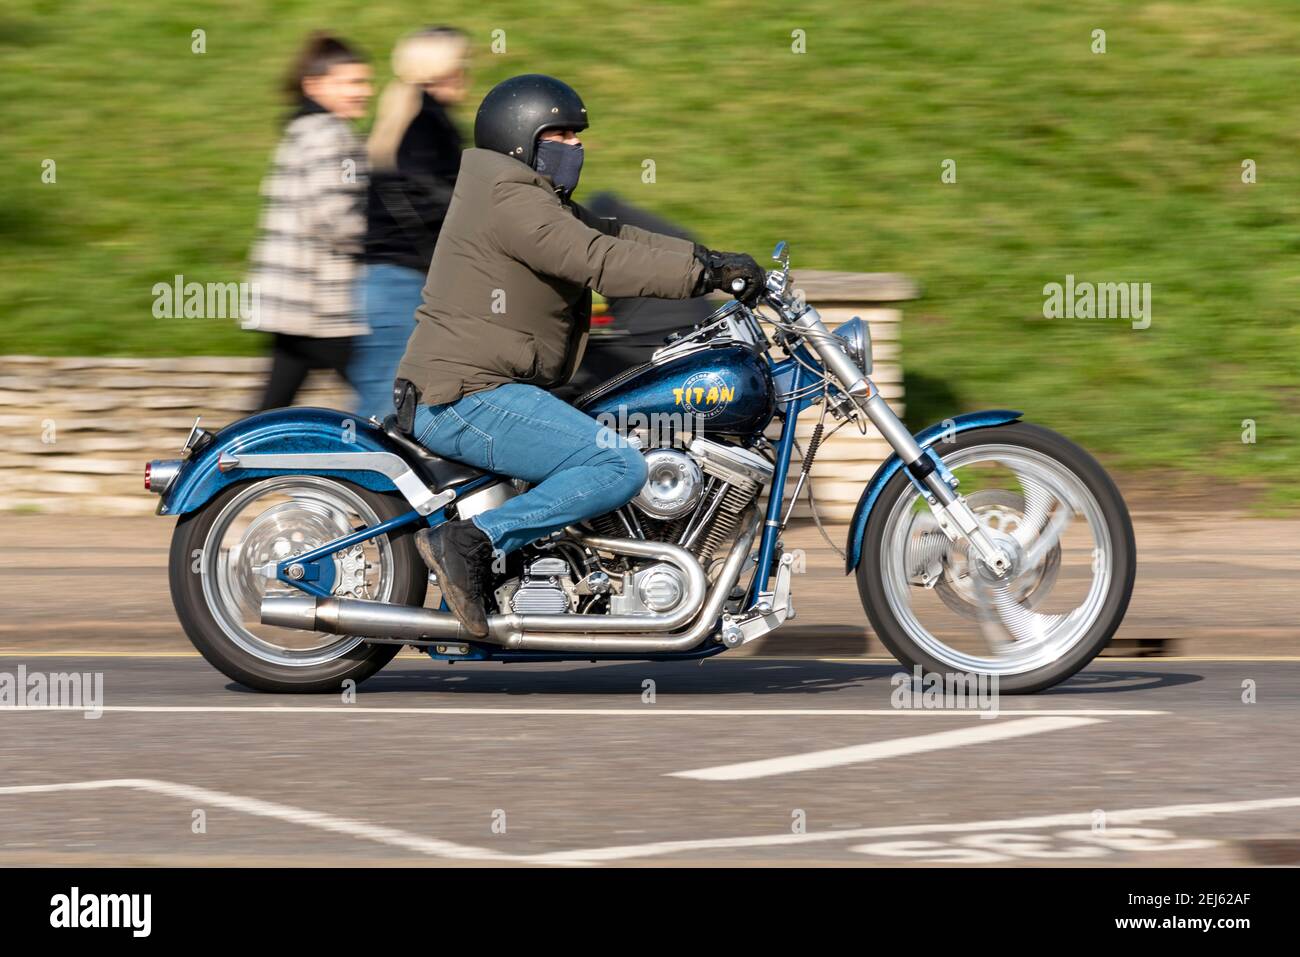 La Titan Motorcycle Company of America S&S Super Motorbike viene guidata a Southend sul Mare, Essex, Regno Unito, in una giornata di sole, durante il blocco COVID 19 Foto Stock